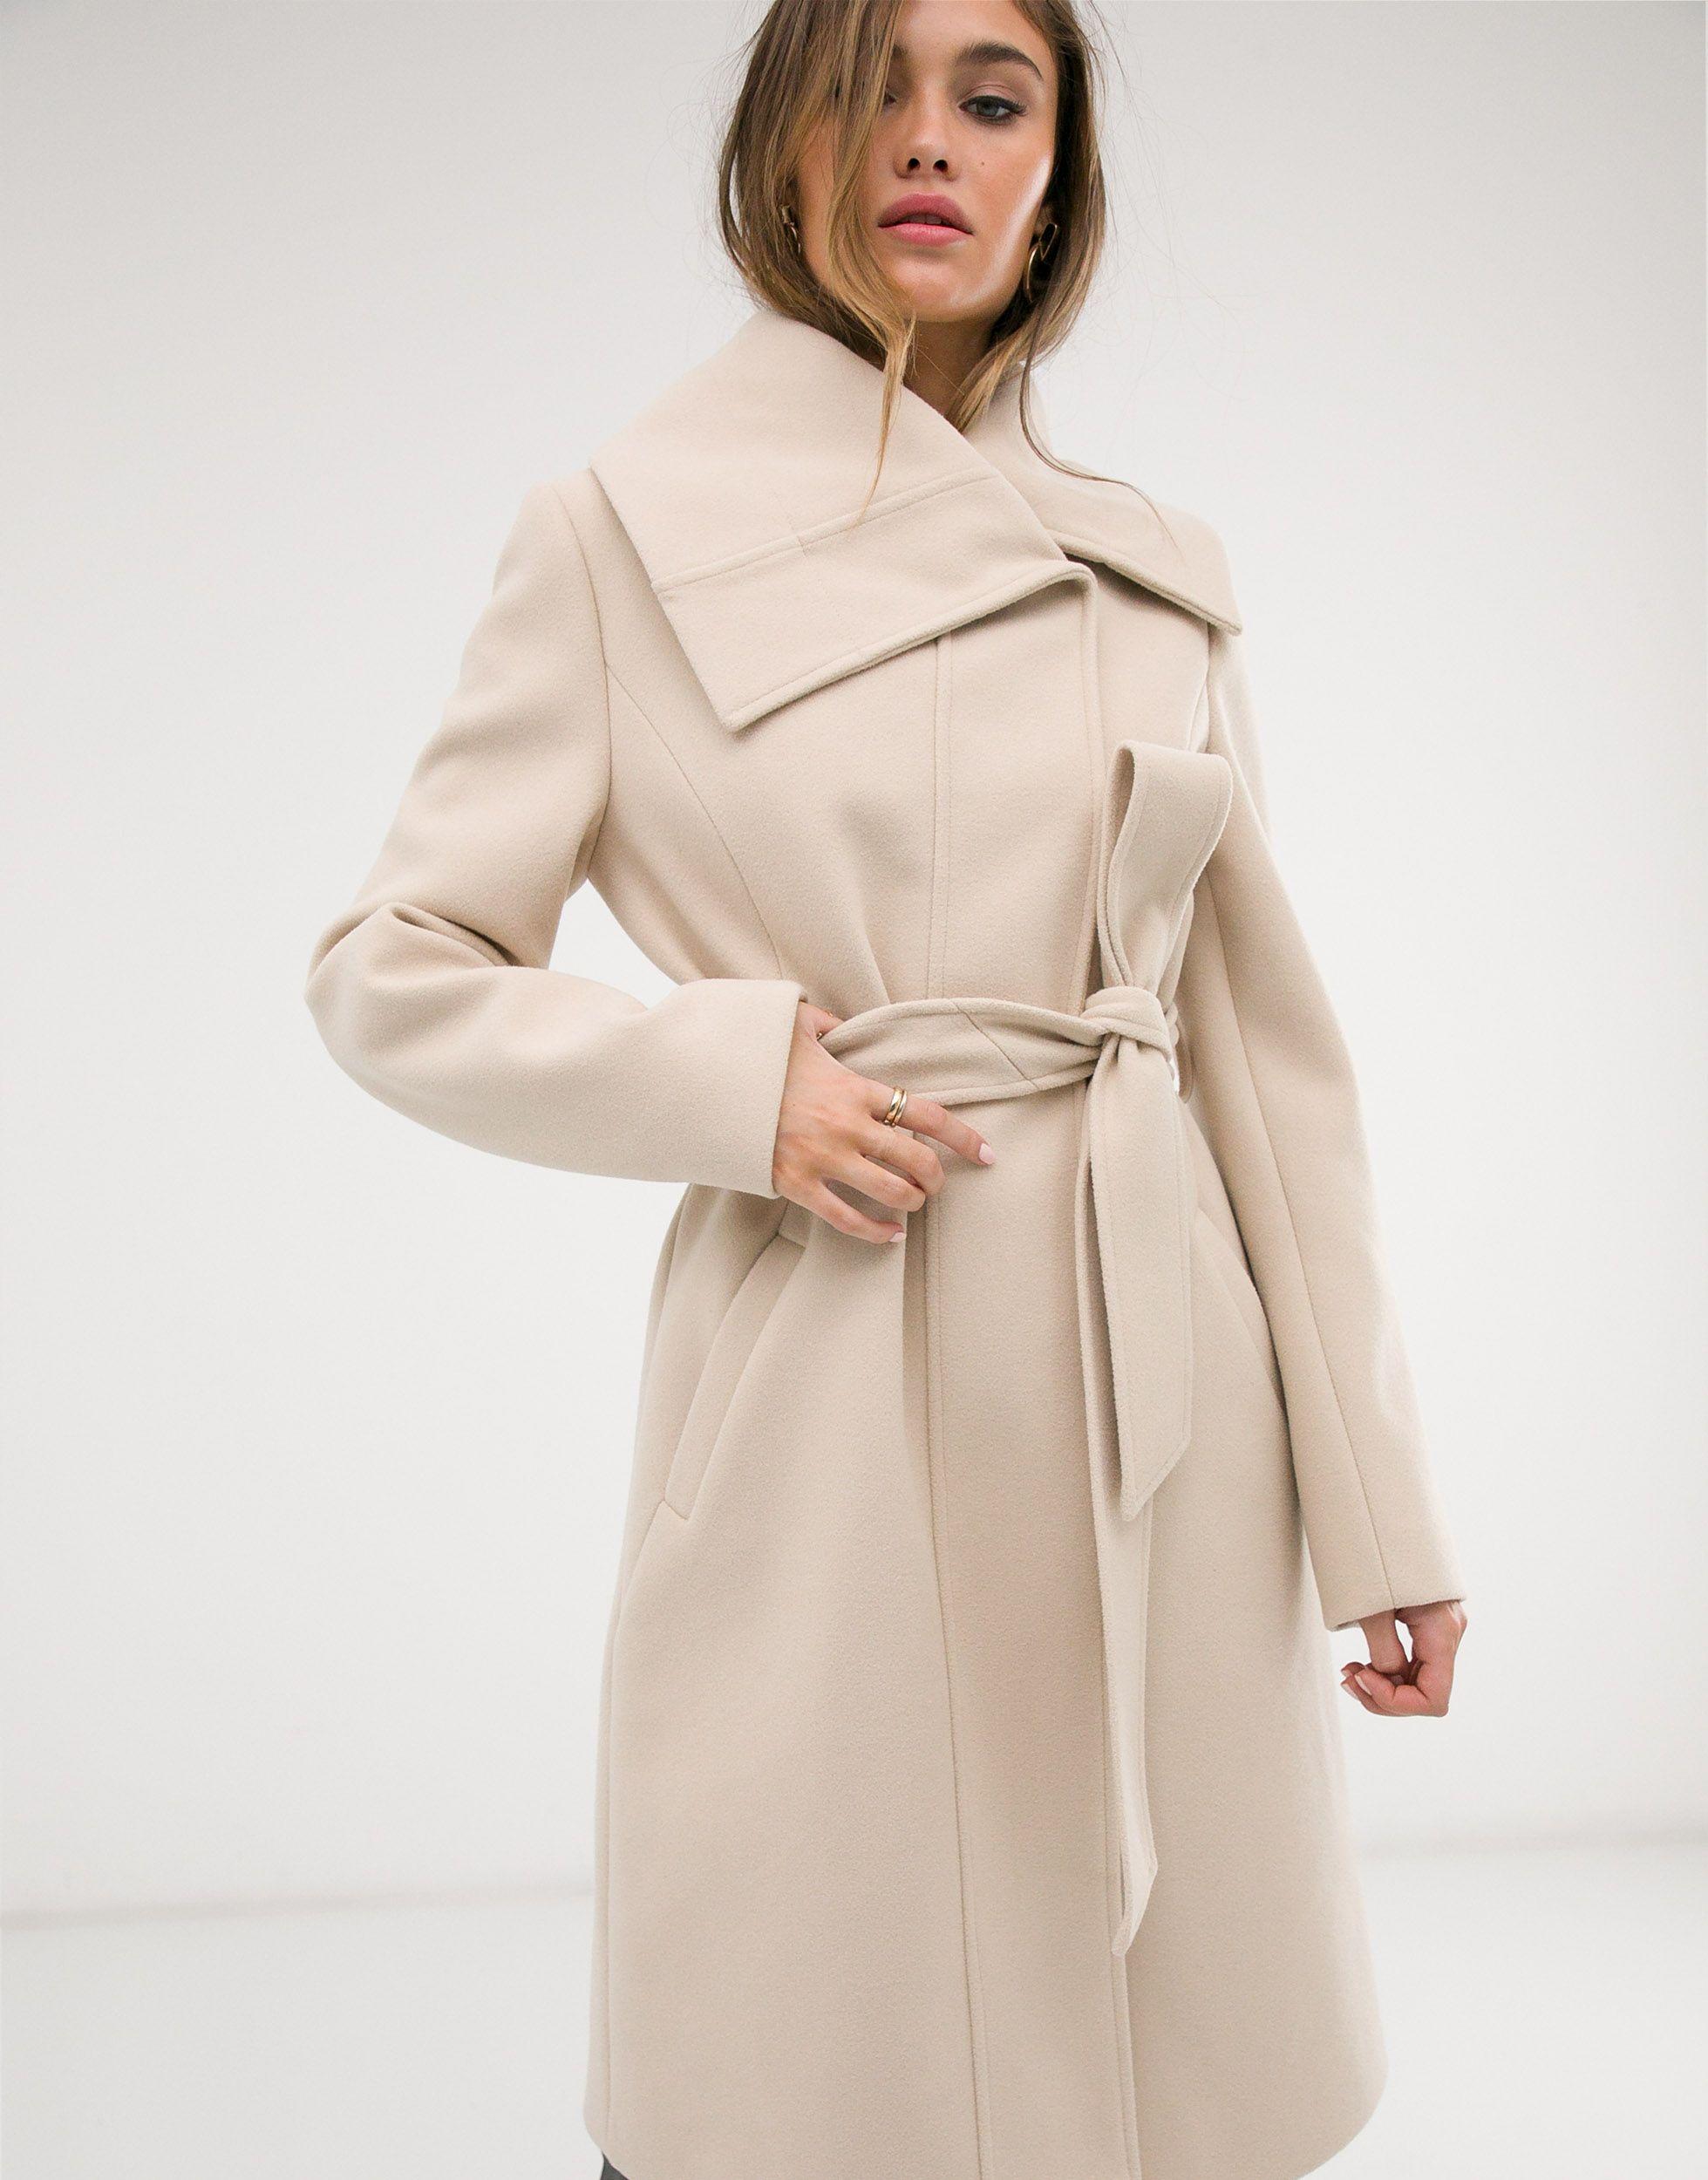 Кремовое пальто. Кремовое пальто женское. Пальто с асимметричным воротником. Пальто кремового цвета женское. Пальто с асимметричным воротником женское.